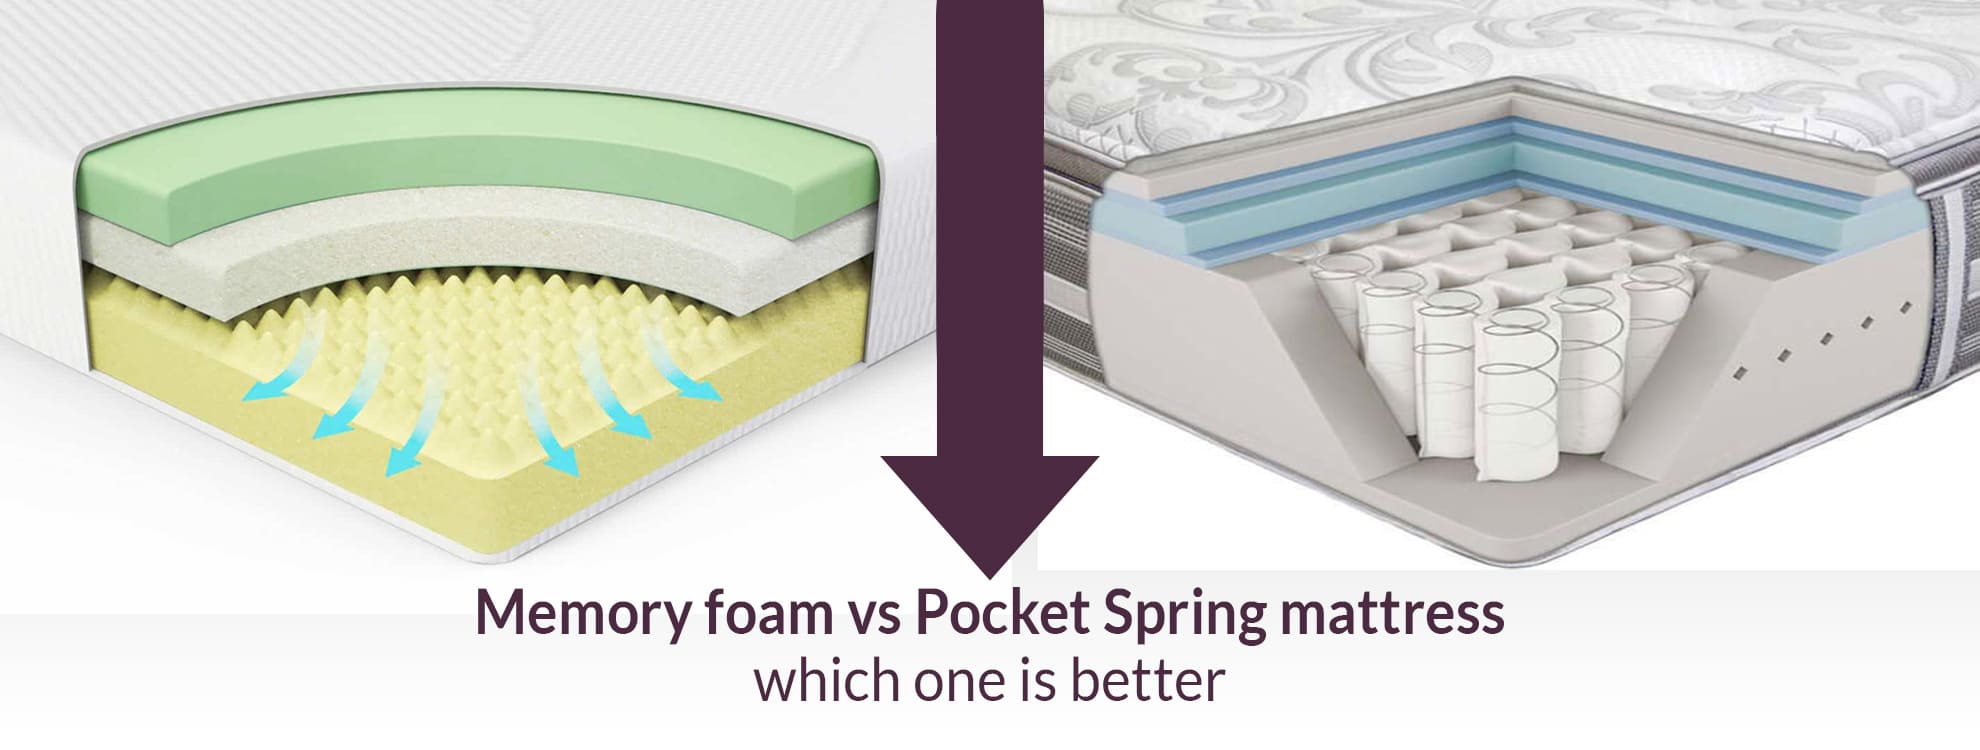 inside amish spring mattress vs regular